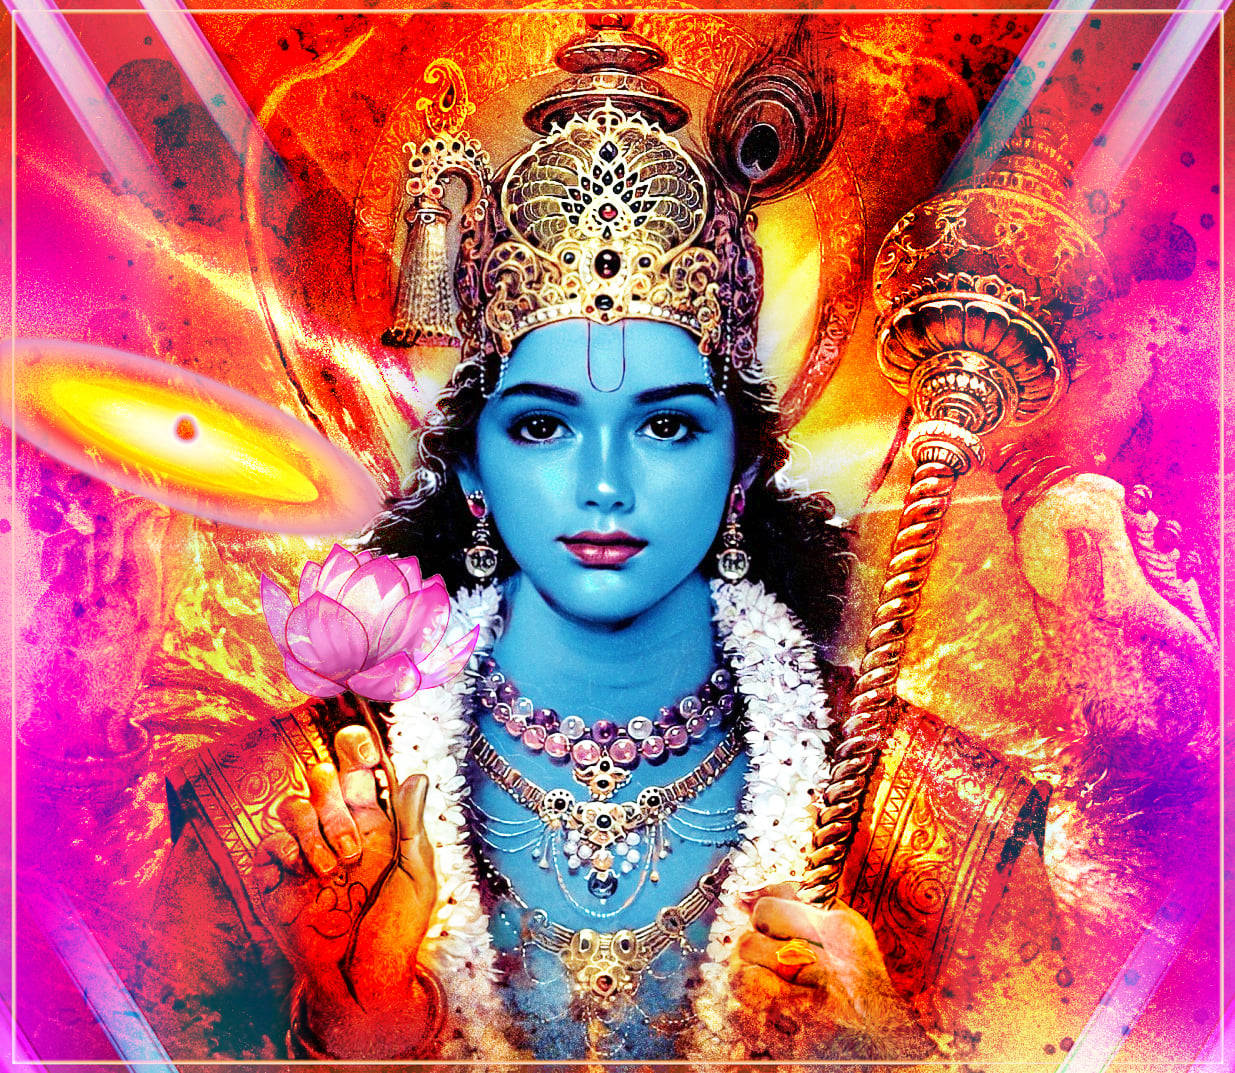 Free Lord Krishna 3d Wallpaper Downloads, [100+] Lord Krishna 3d Wallpapers  for FREE 